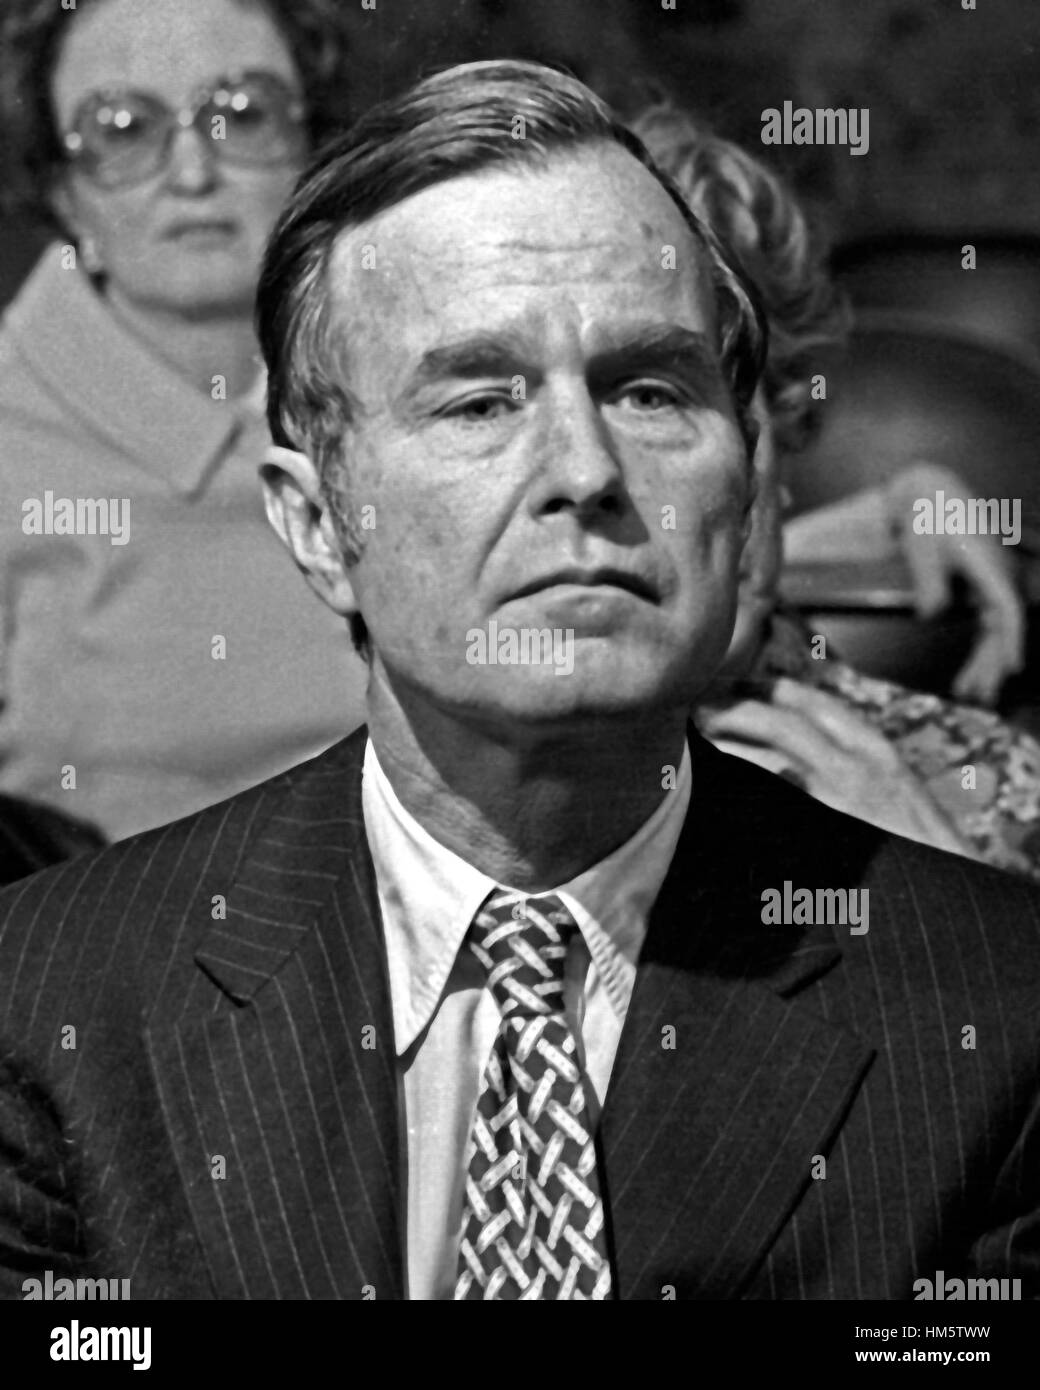 Botschafter der Vereinigten Staaten China George H.W. Bush hört auf ein US-Senator Fragen während seiner Anhörung, Direktor des US Central Intelligence Agency (CIA) in Washington, D.C. am 16. Dezember 1975..Credit: Benjamin E. "Gen" Fort Stockfoto